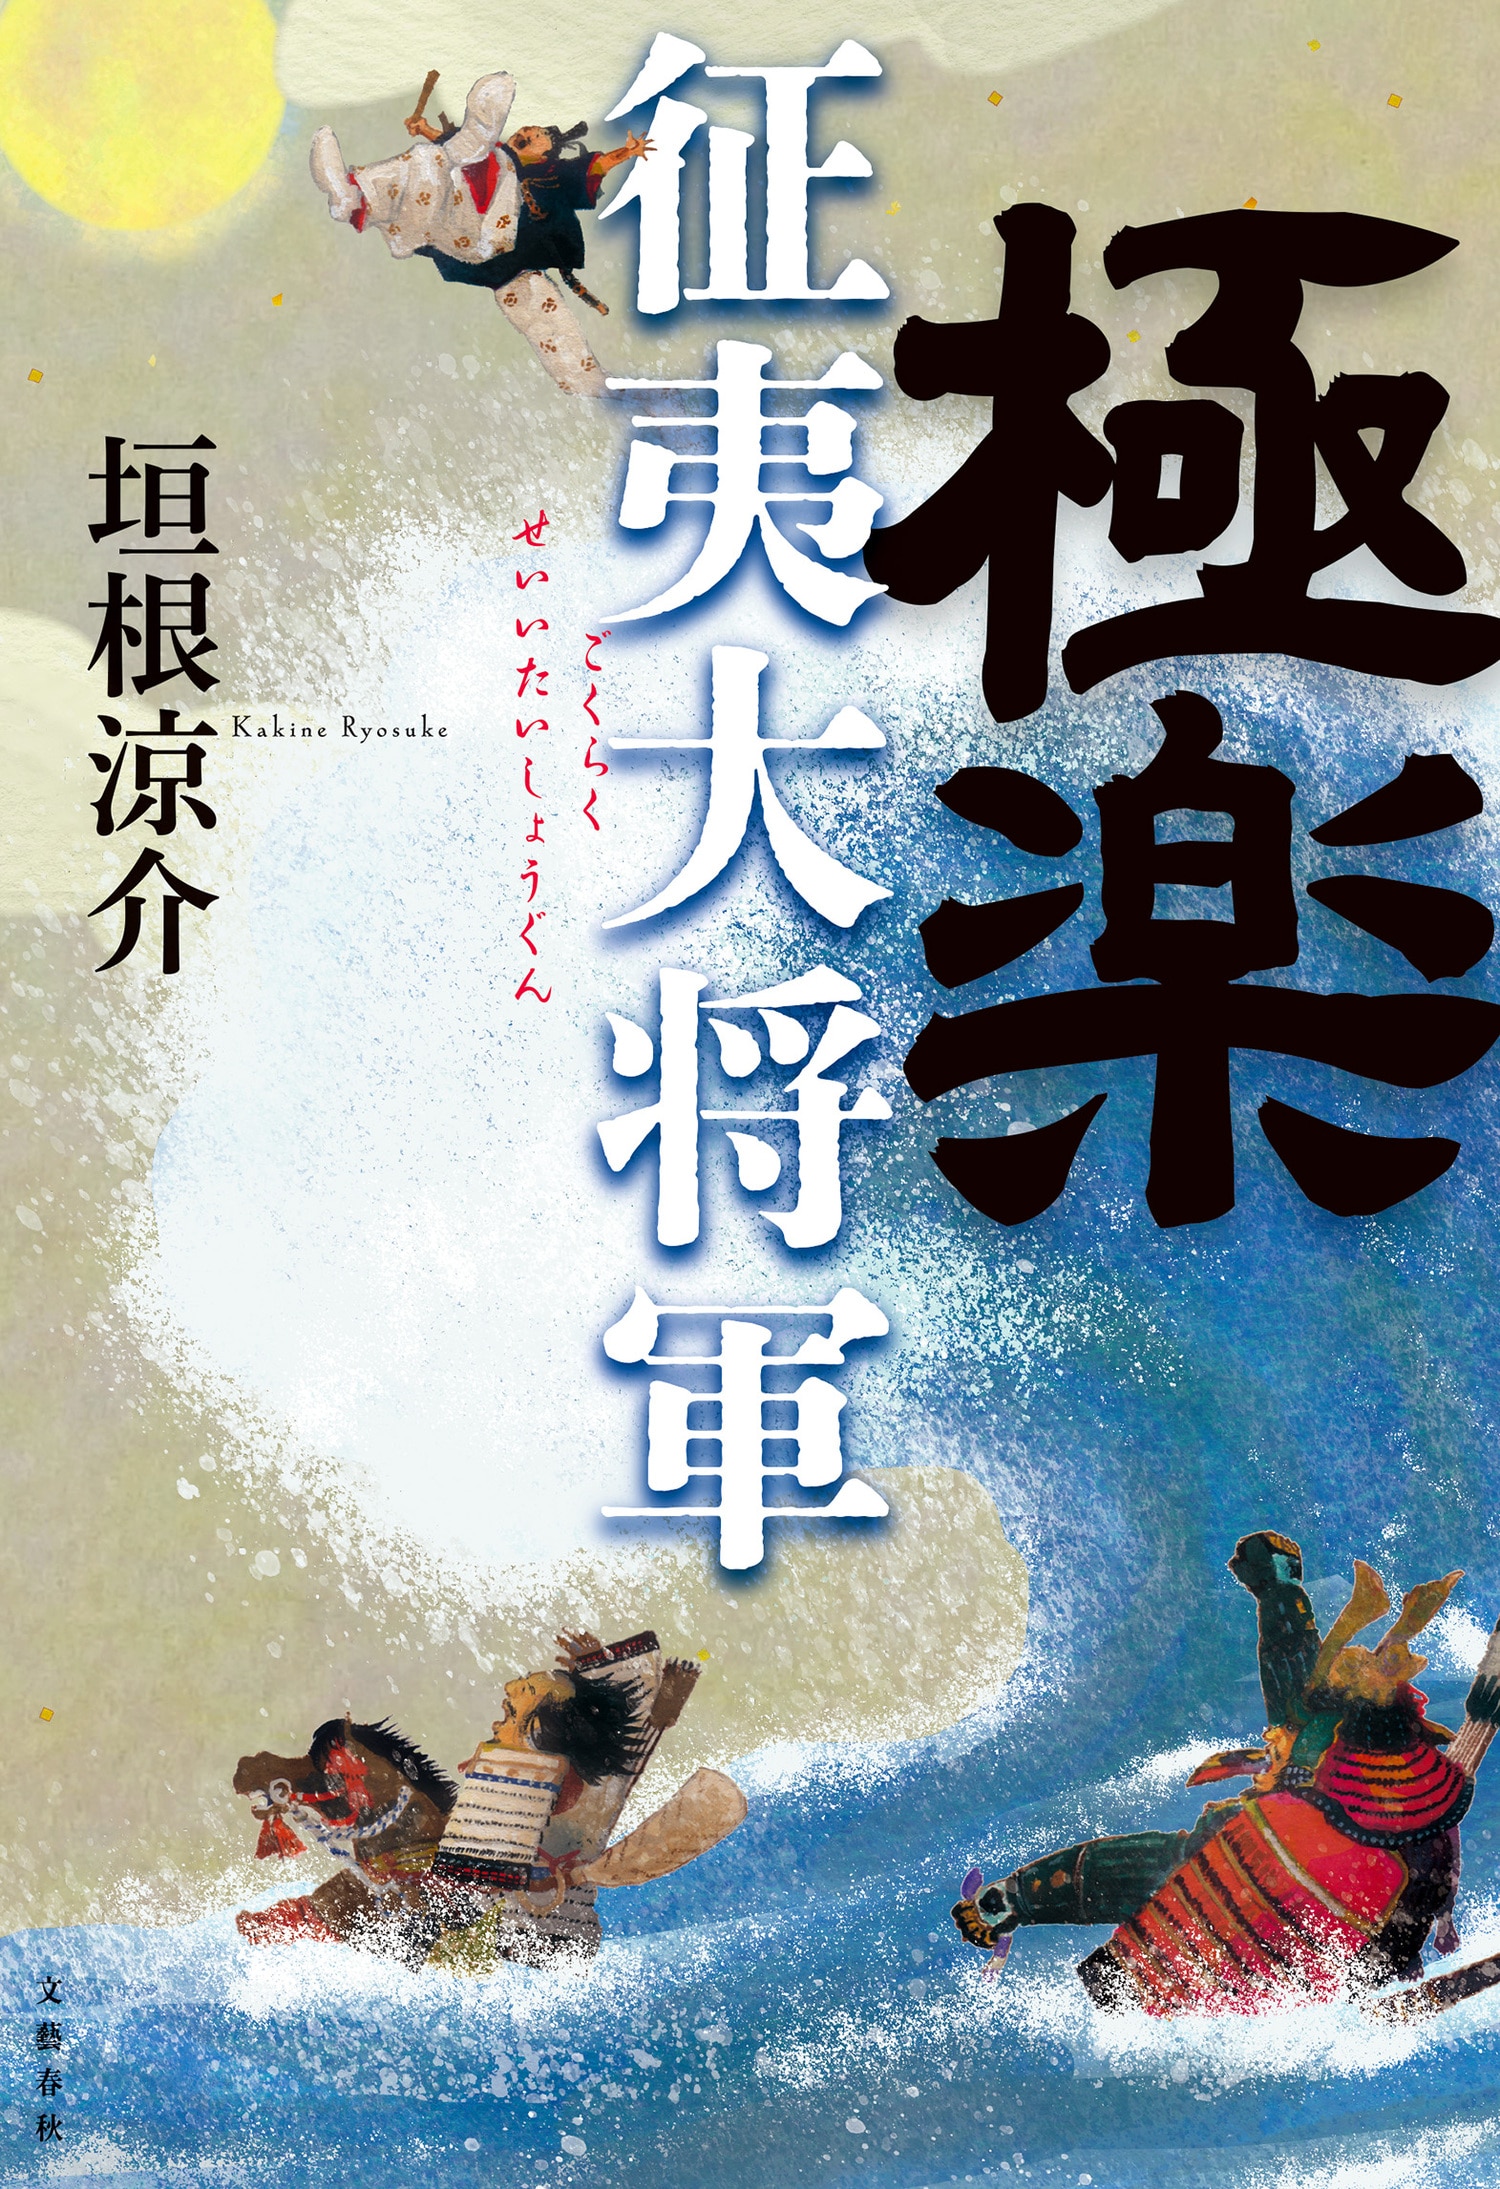 【速報】第169回直木賞に垣根涼介さんの『極楽征夷大将軍』と永井紗耶子さんの『木挽町のあだ討ち』が選ばれました。